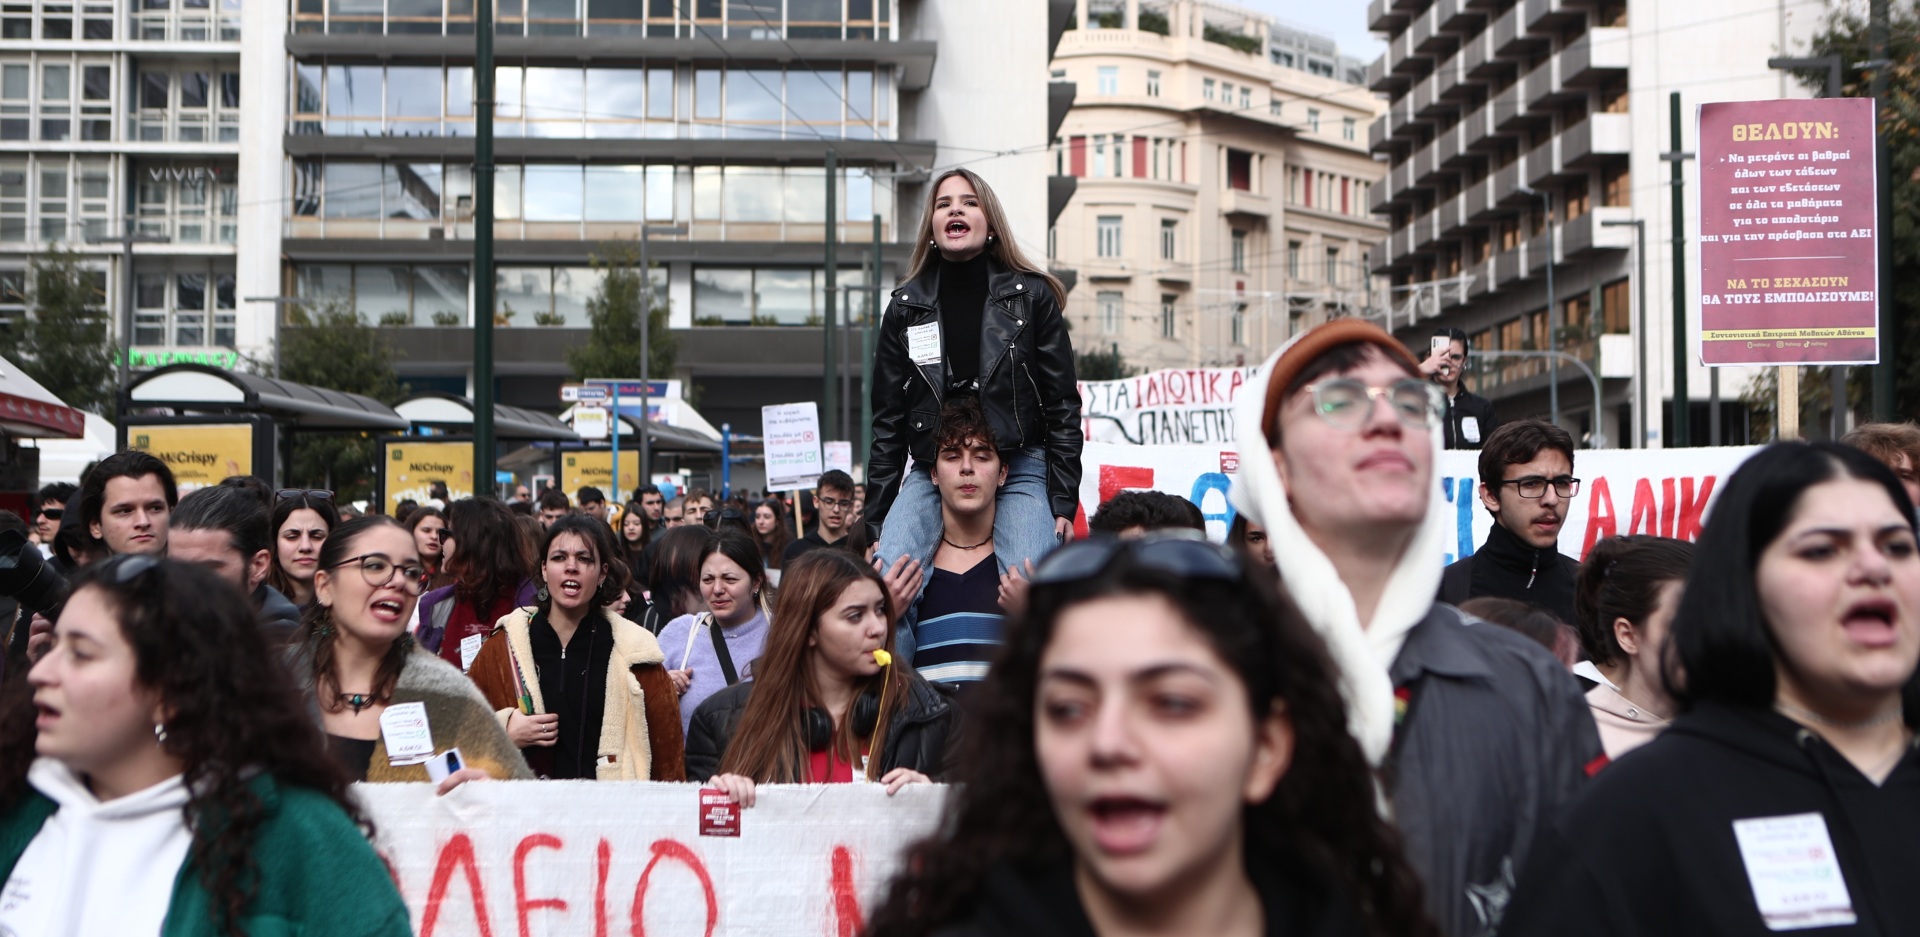 Πανεκπαιδευτικό συλλαλητήριο ενάντια στα μη κρατικά Πανεπιστήμια - Στους δρόμους φοιτητές, μαθητές, εκπαιδευτικοί - Εικόνες από το κέντρο της Αθήνας.